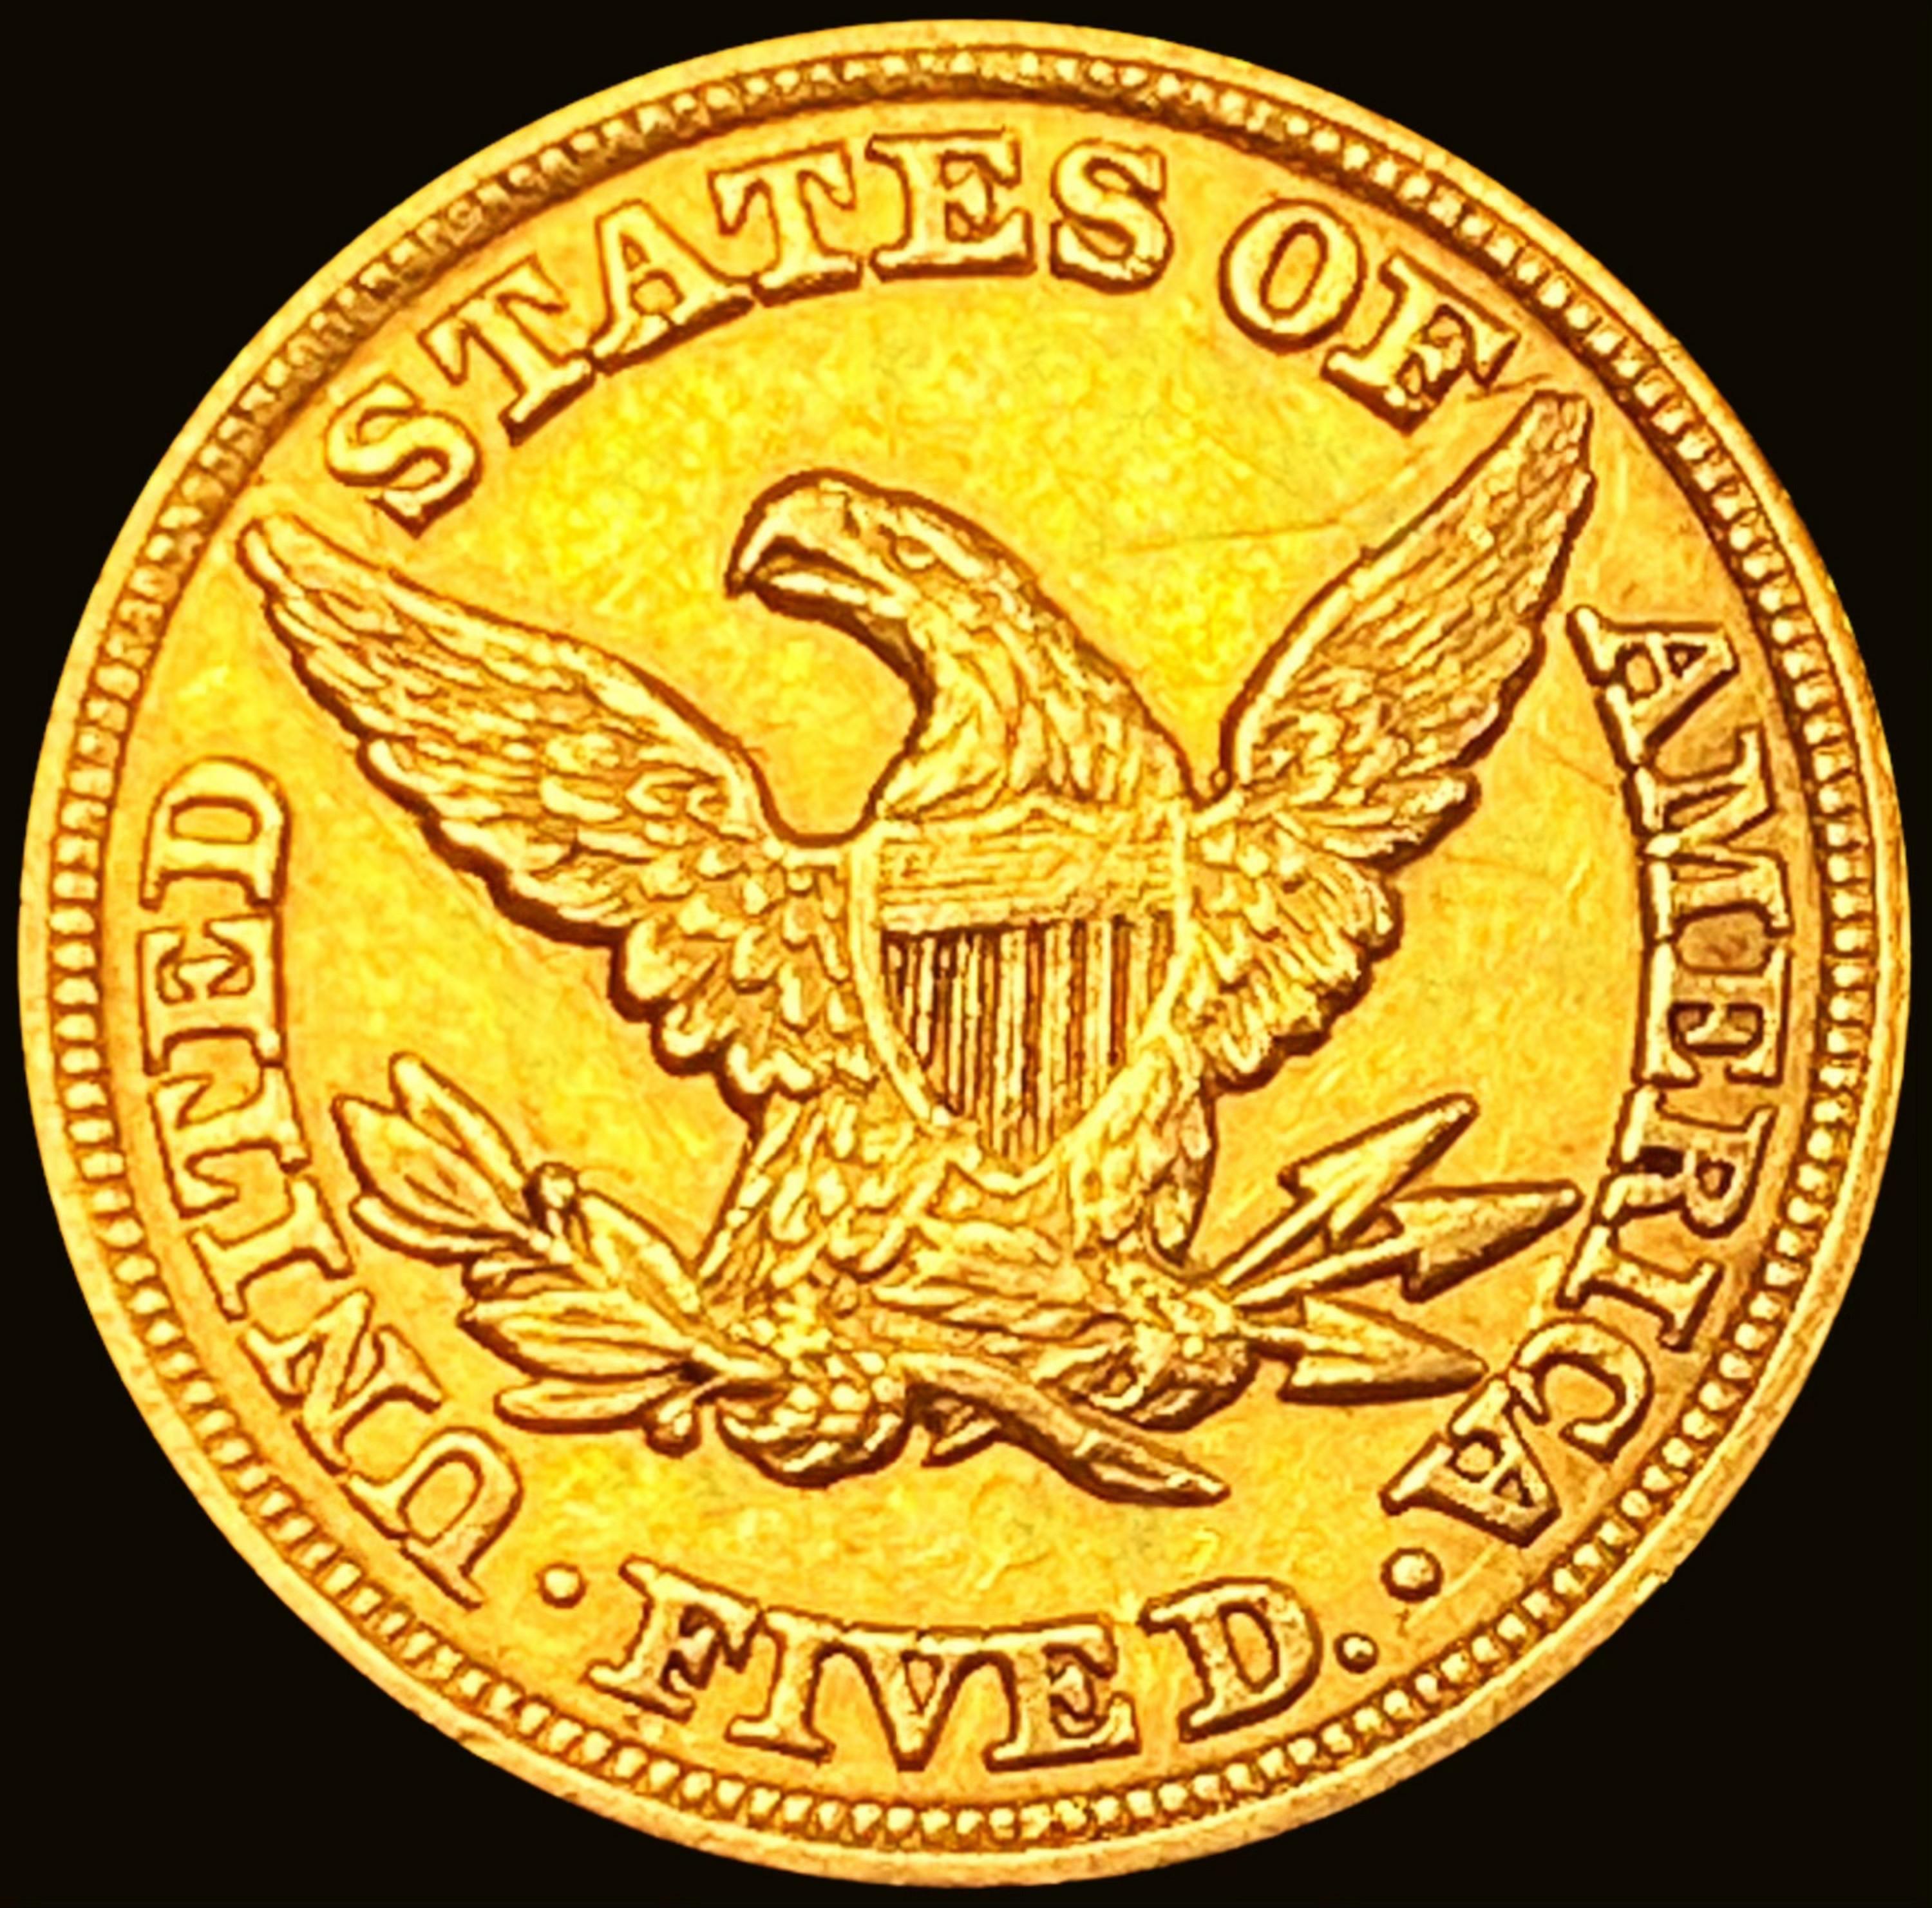 1850-C $5 Gold Half Eagle CHOICE AU